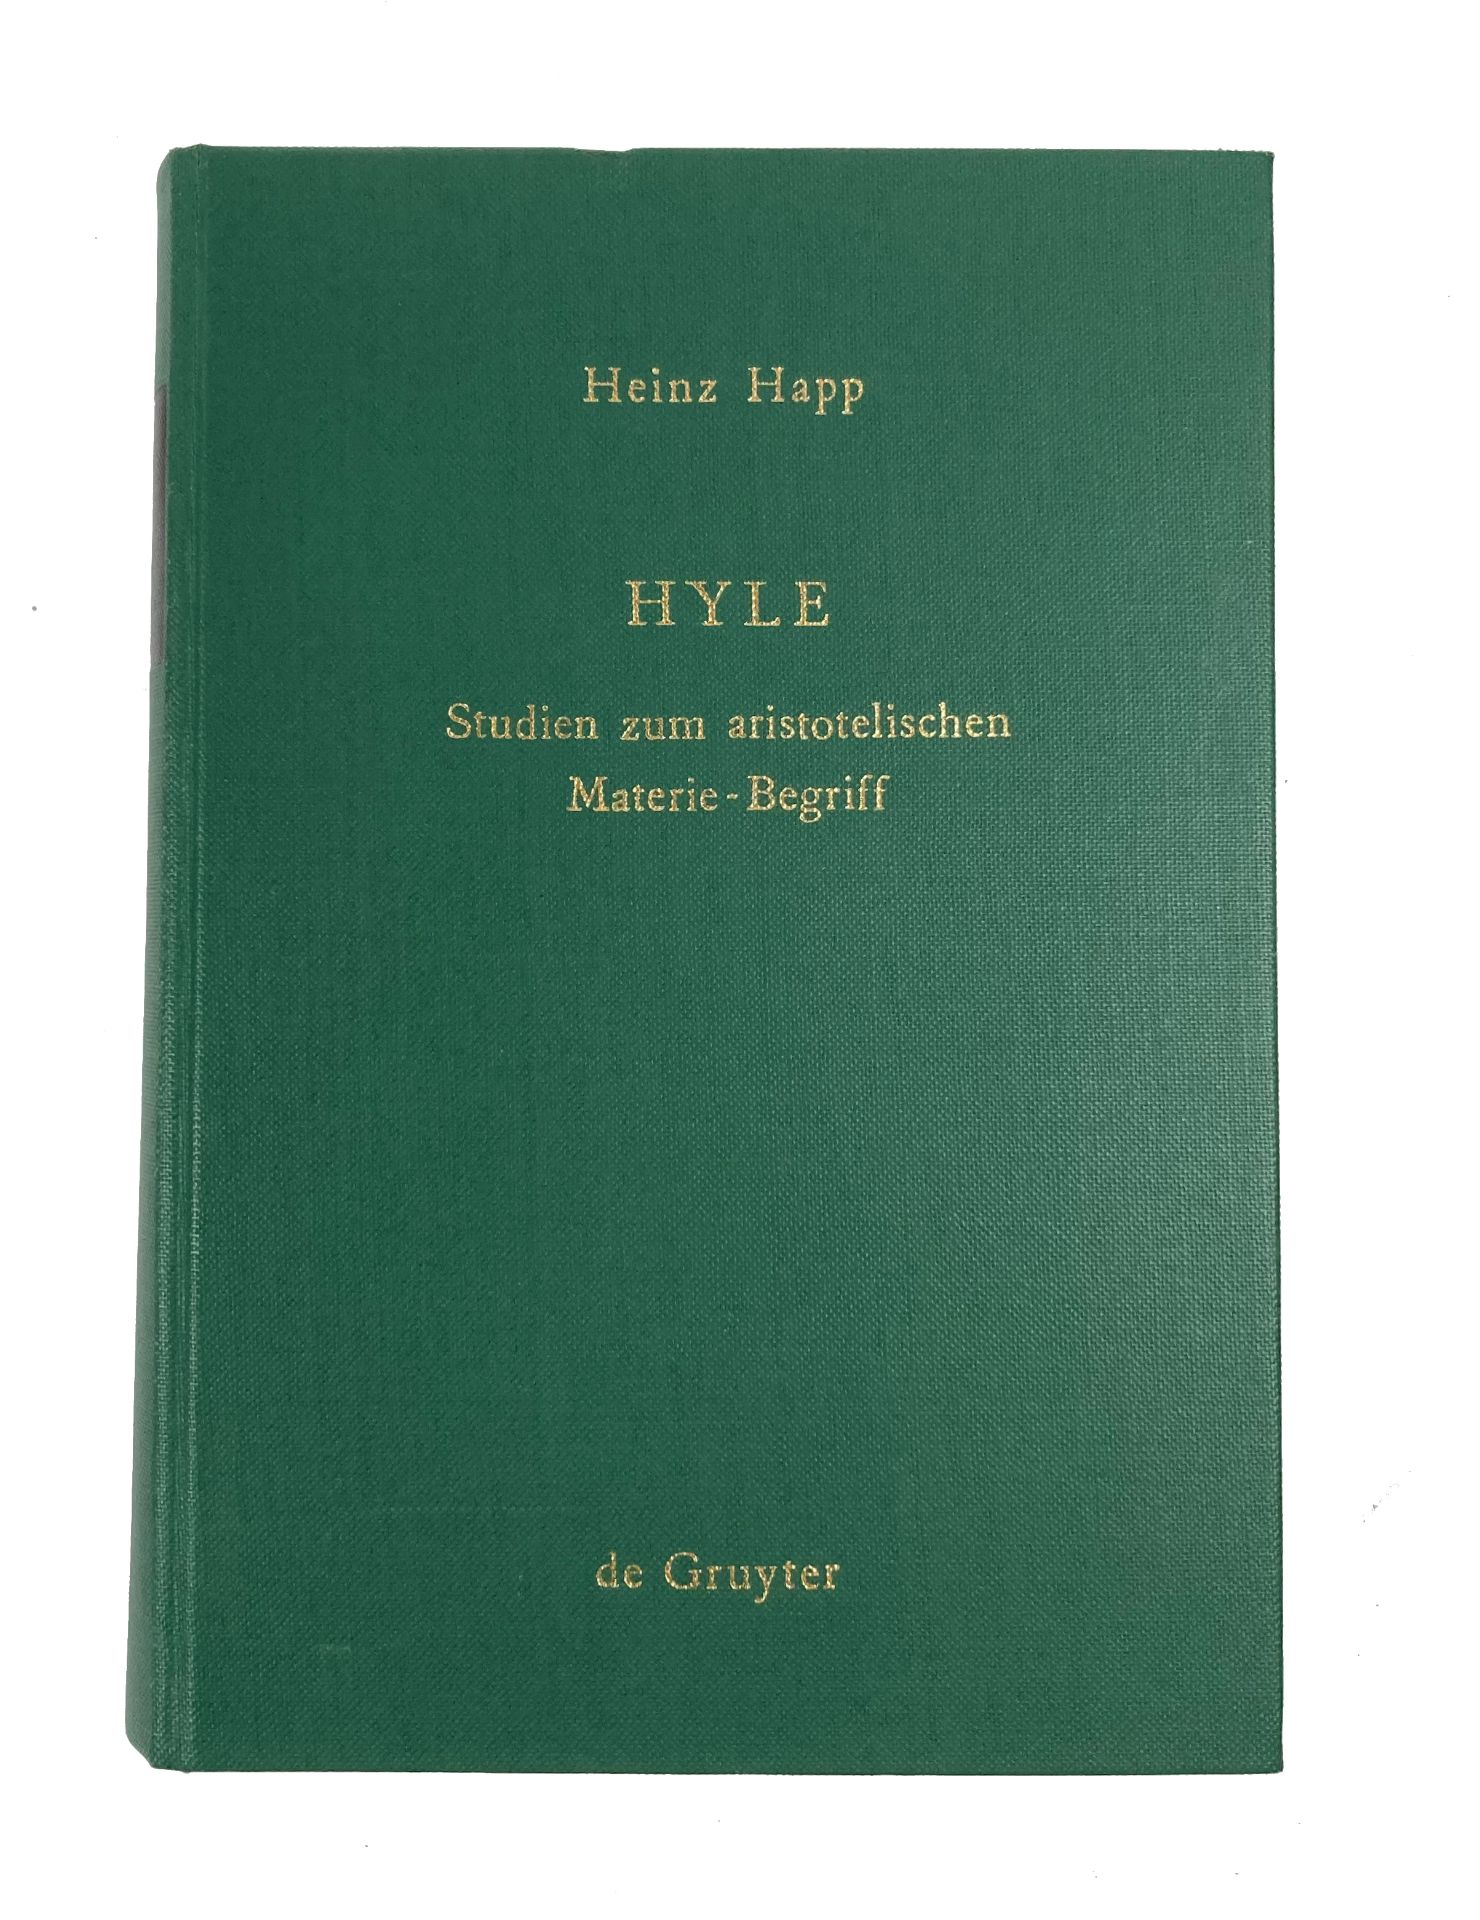 ARISTOTELES -- HAPP, H. Hyle. Studien zum aristotelischen Materie-Begriff. 1971. Ocl